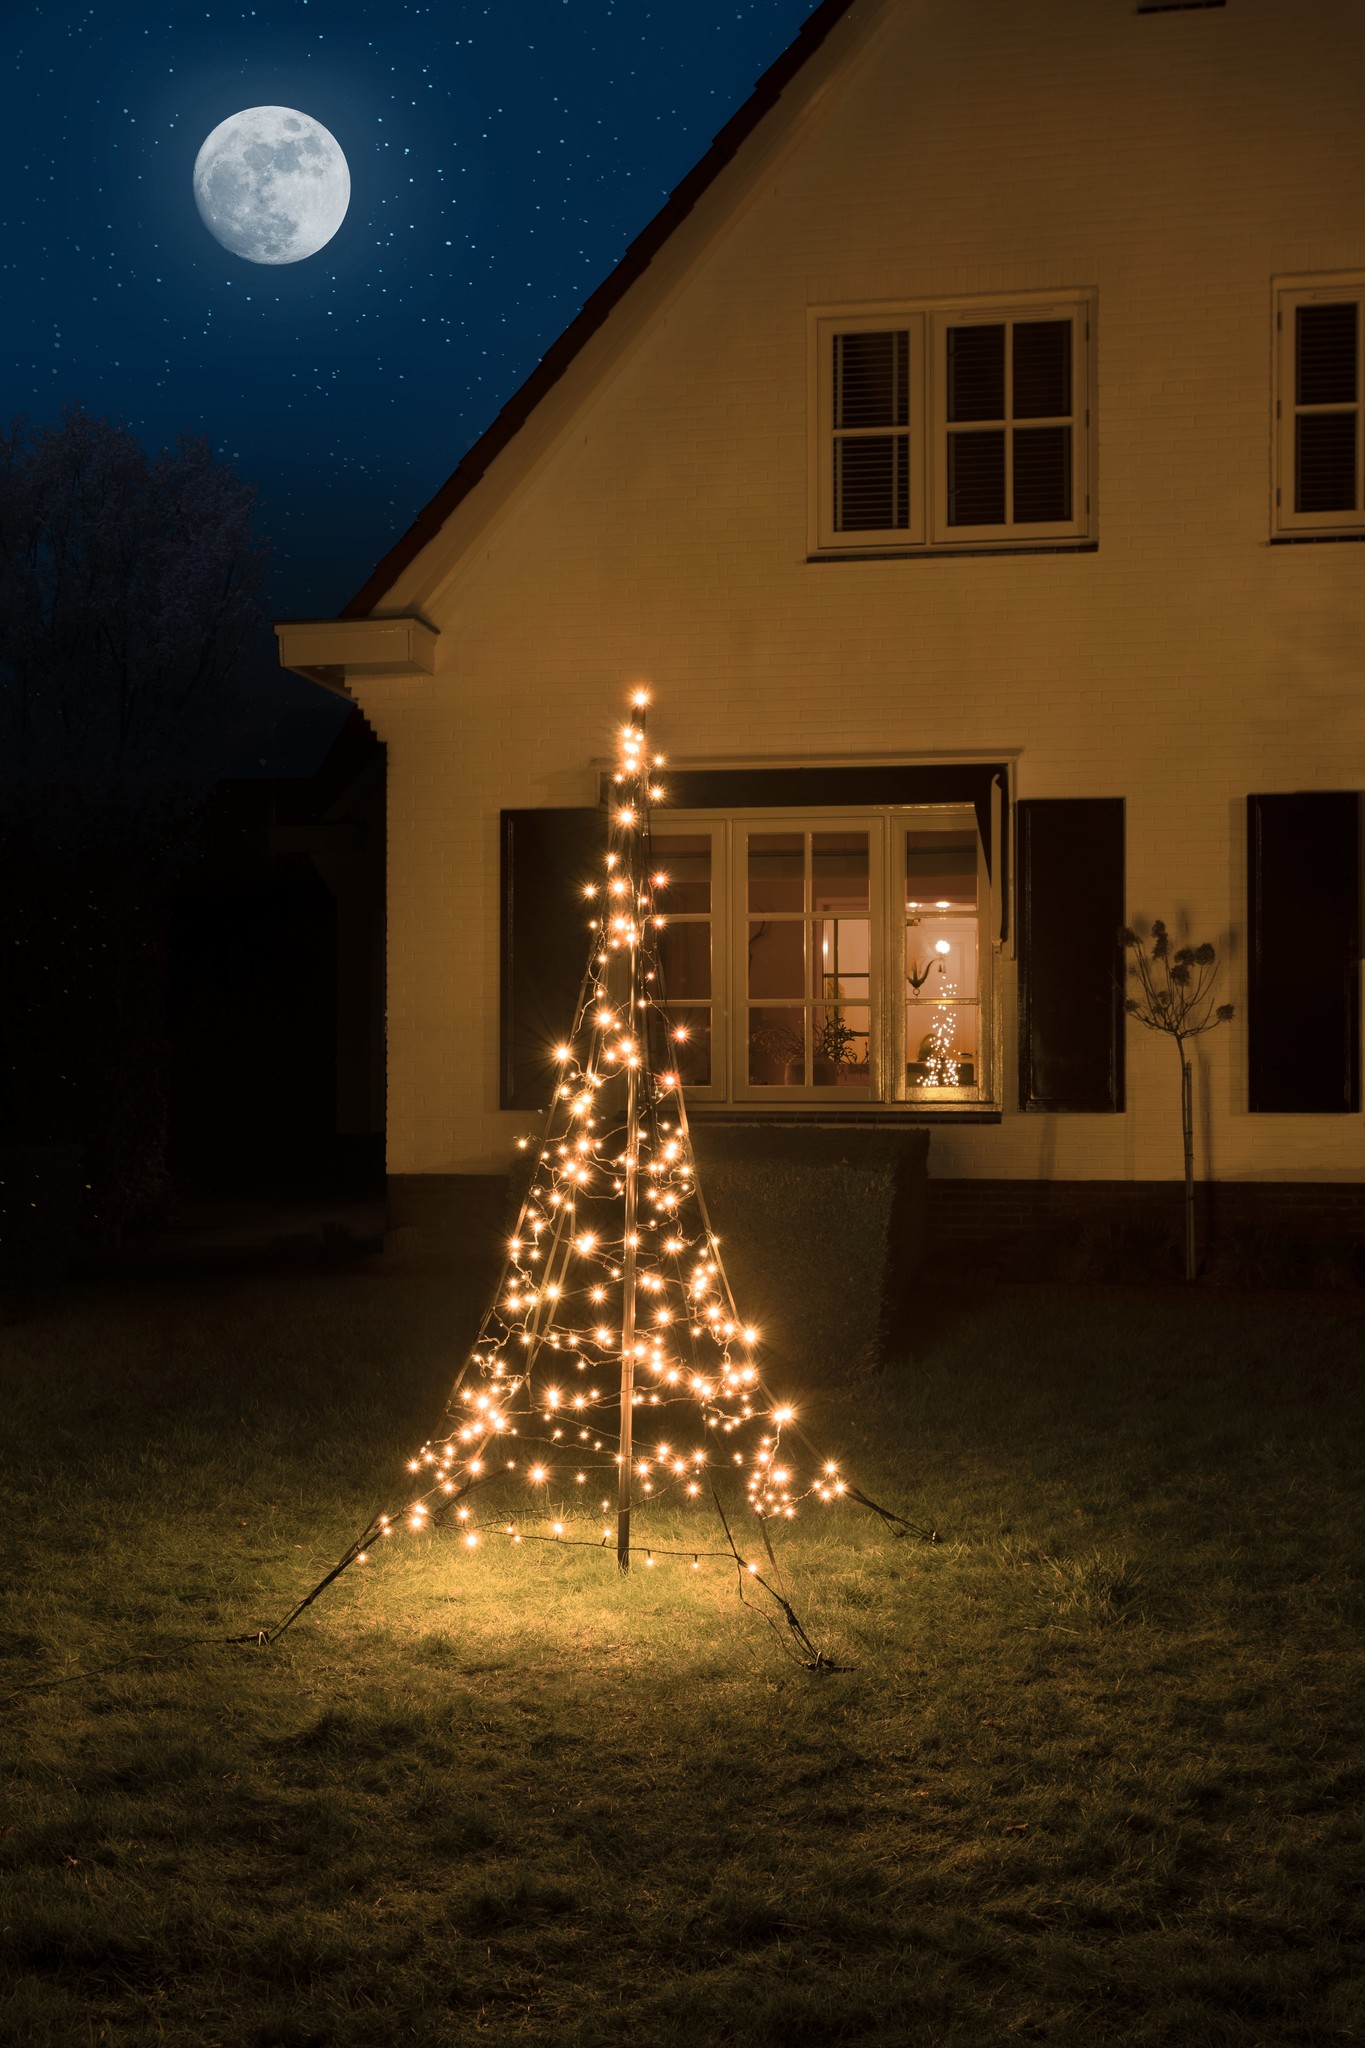 LED Lichterbaum mit Stern, 2,4m, Multifunktionsbaum, Warmweiß